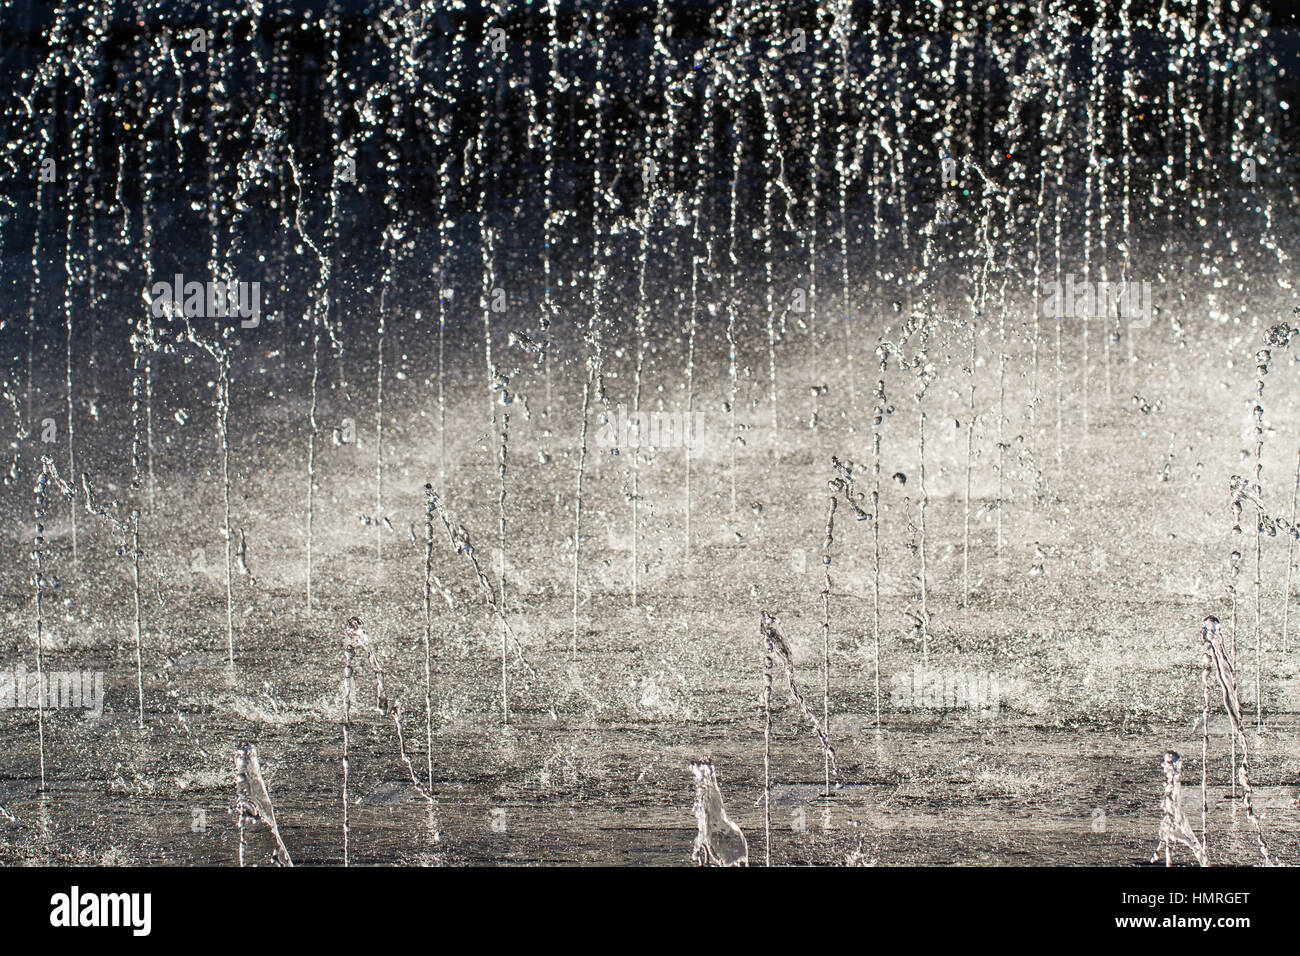 Jets von kaltem, klaren Wasser nach oben spritzt und spritzt auf den Boden in einen hohen Kontrast, full-Frame-Hintergrundbild. Stockfoto